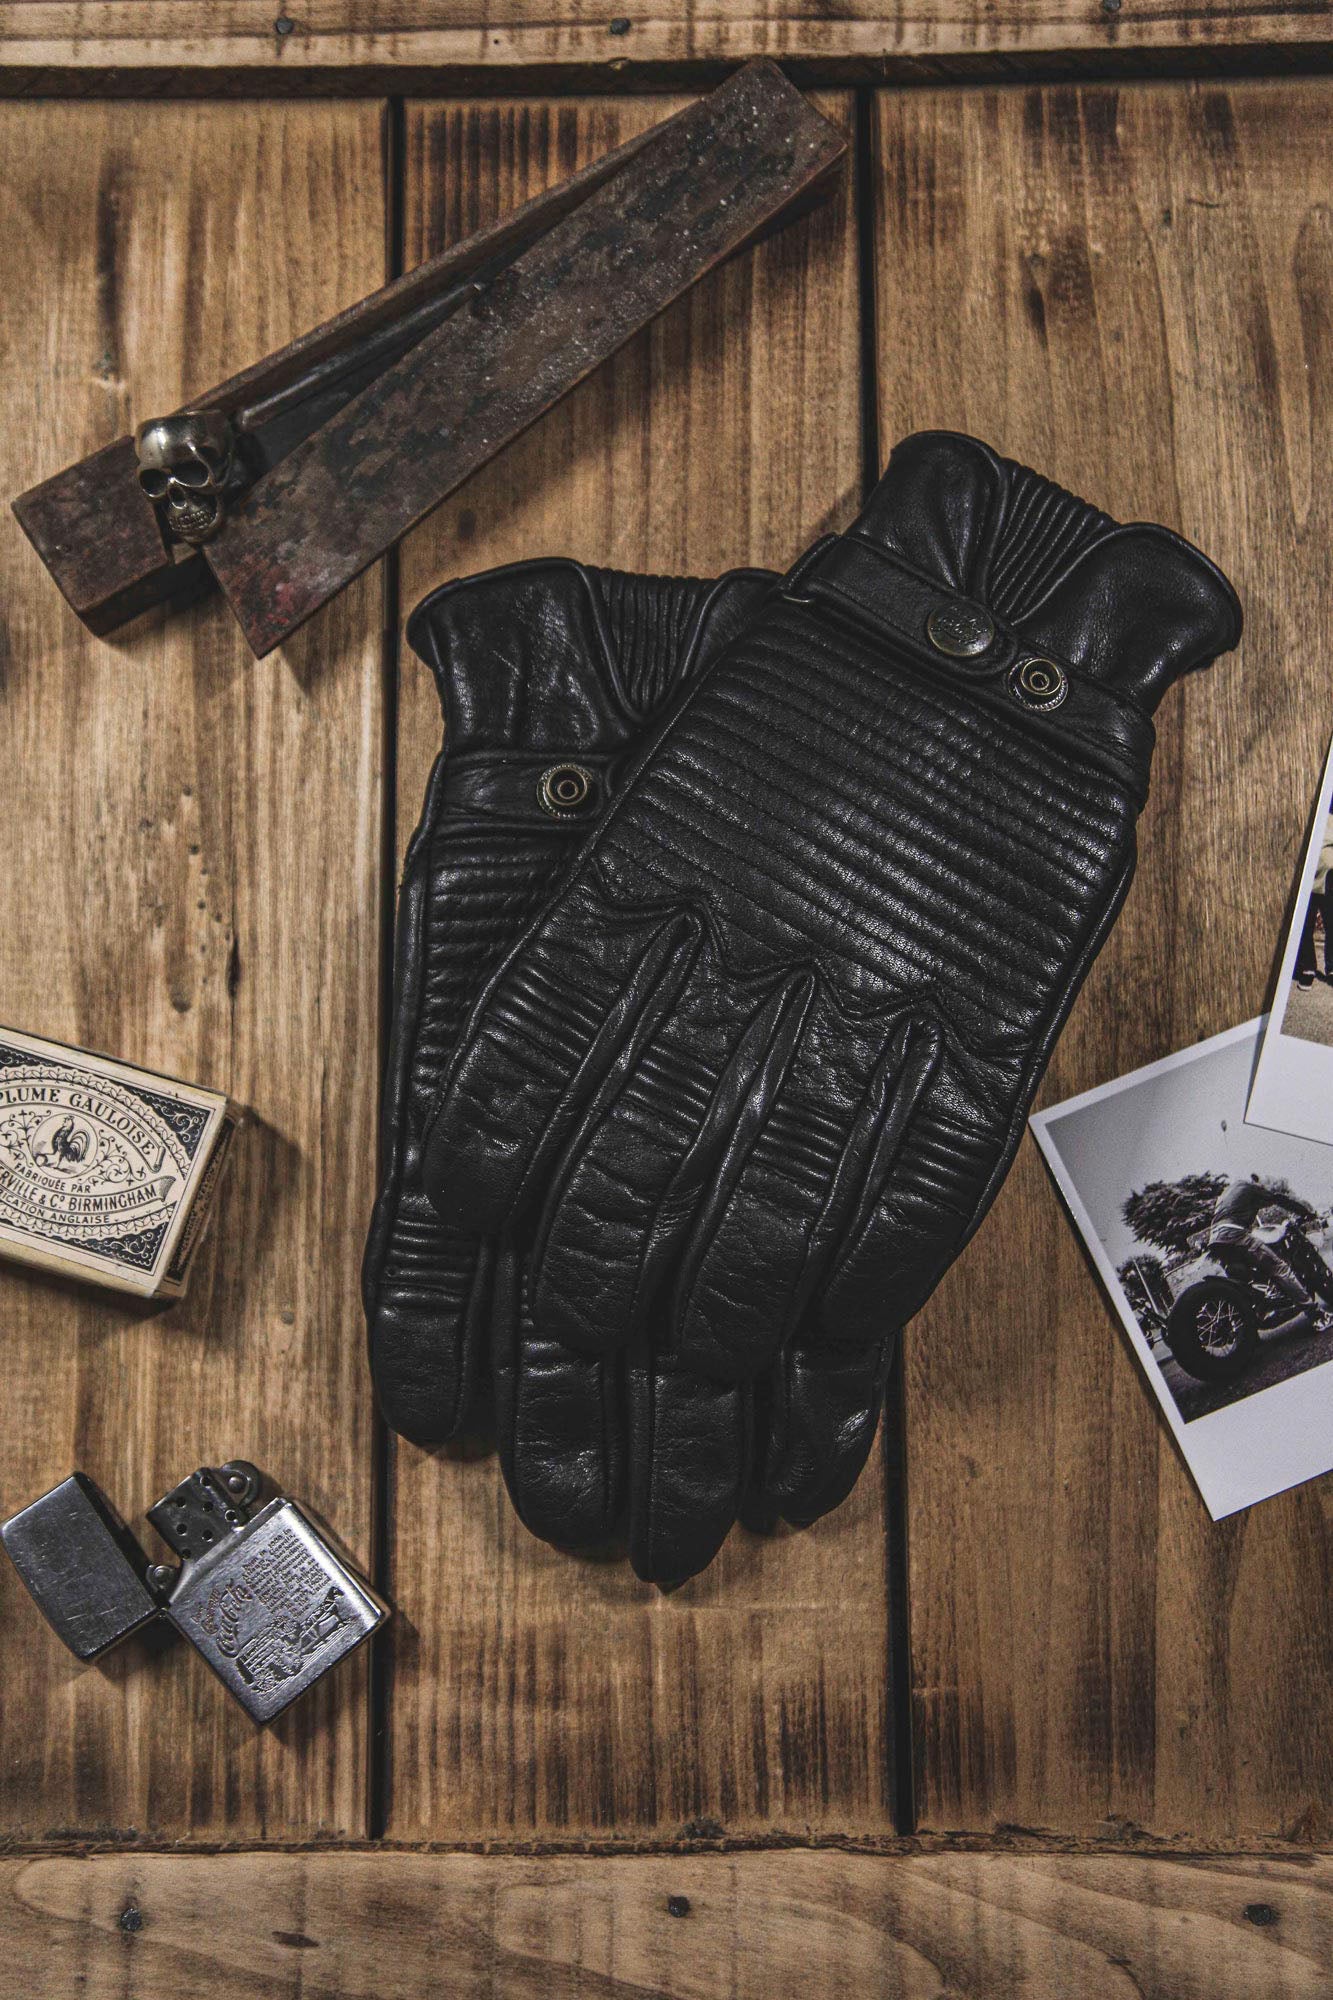 Age of Glory Garage Black Gloves - Slat Flats Clothing